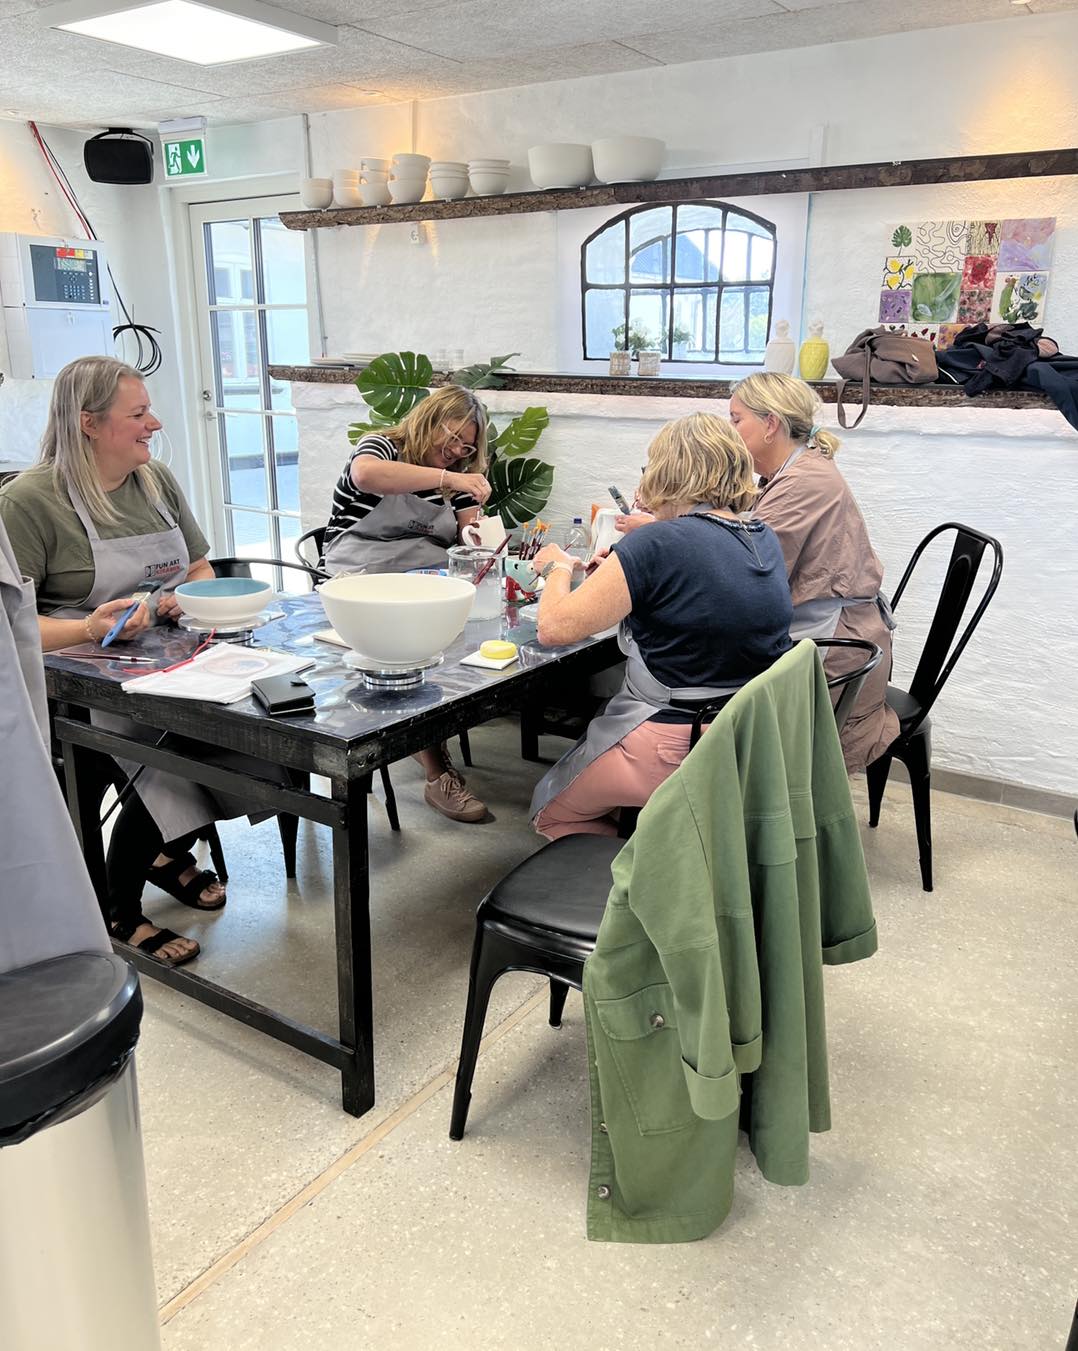 Fire personer ved bord der laver keramik hos Funart Keramik - Familieoplevelser Nordjylland